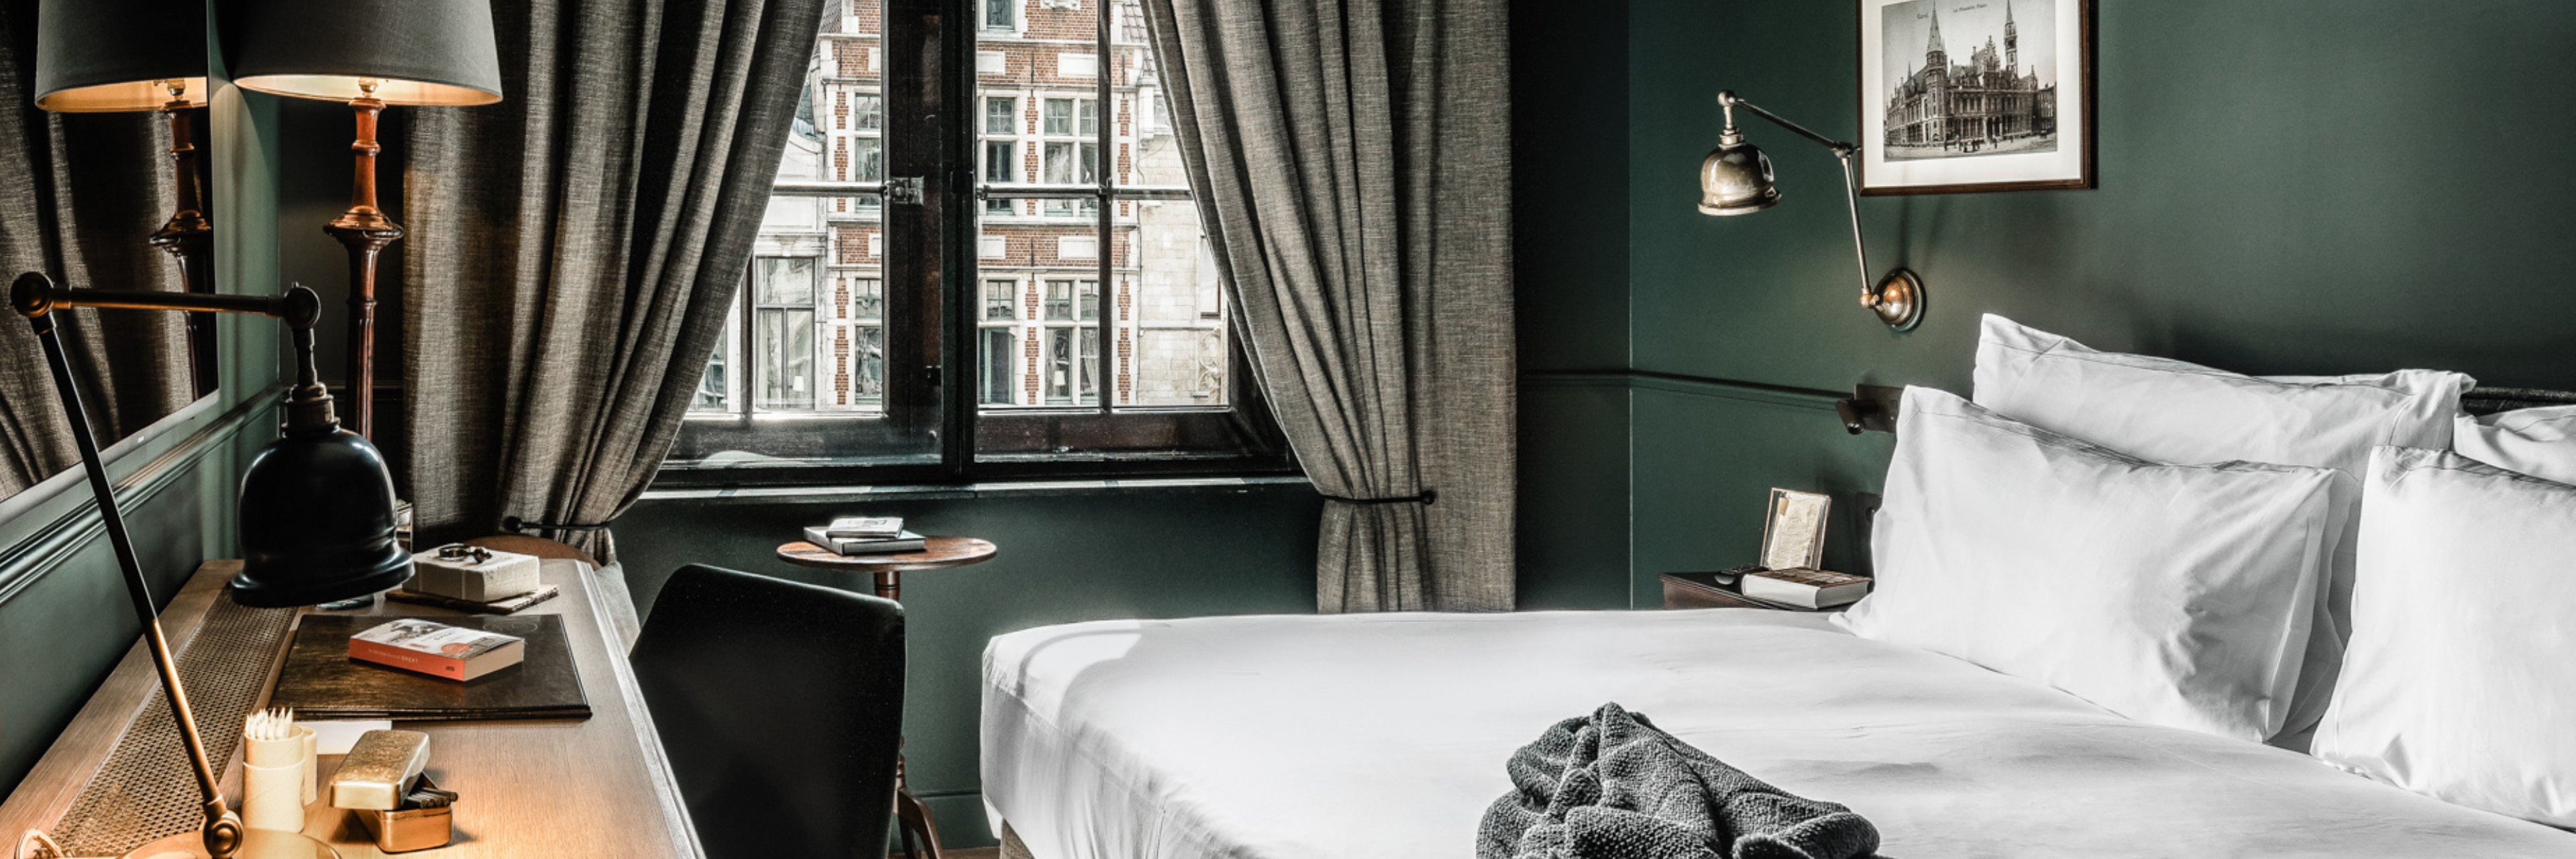 Een hotelkamer in Gent